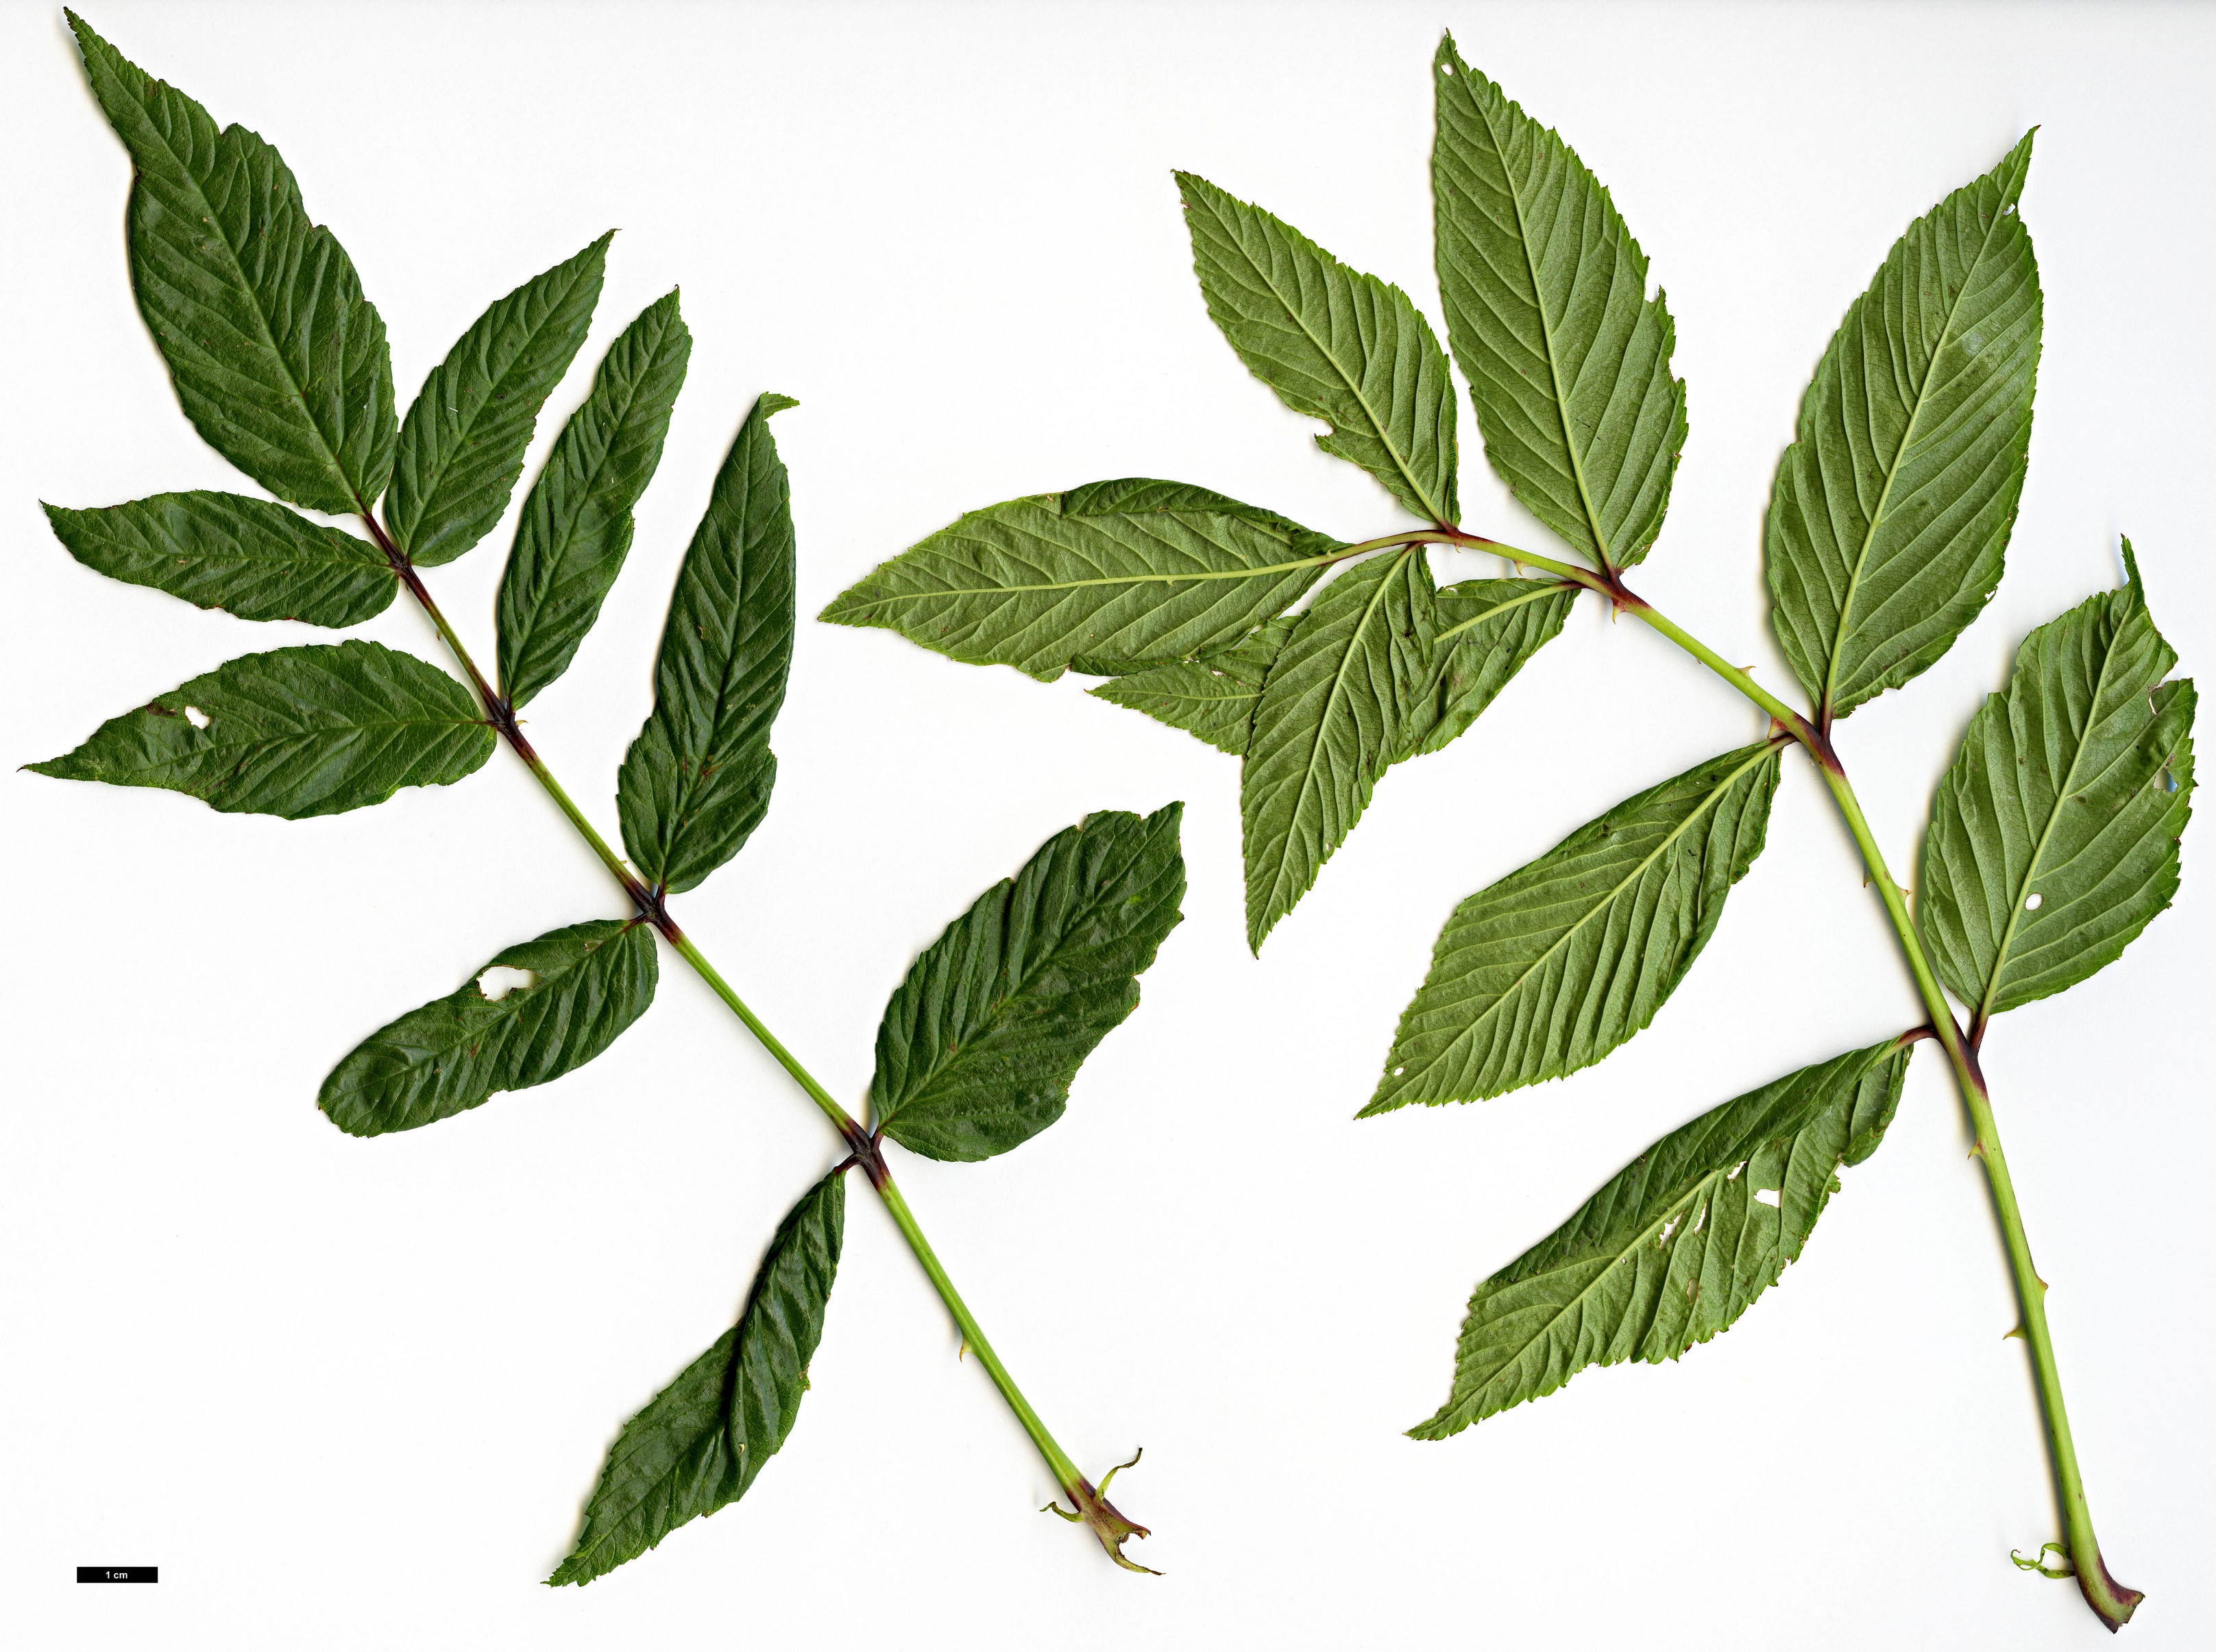 High resolution image: Family: Rosaceae - Genus: Rubus - Taxon: rosifolius - SpeciesSub: ‘Coronarius’